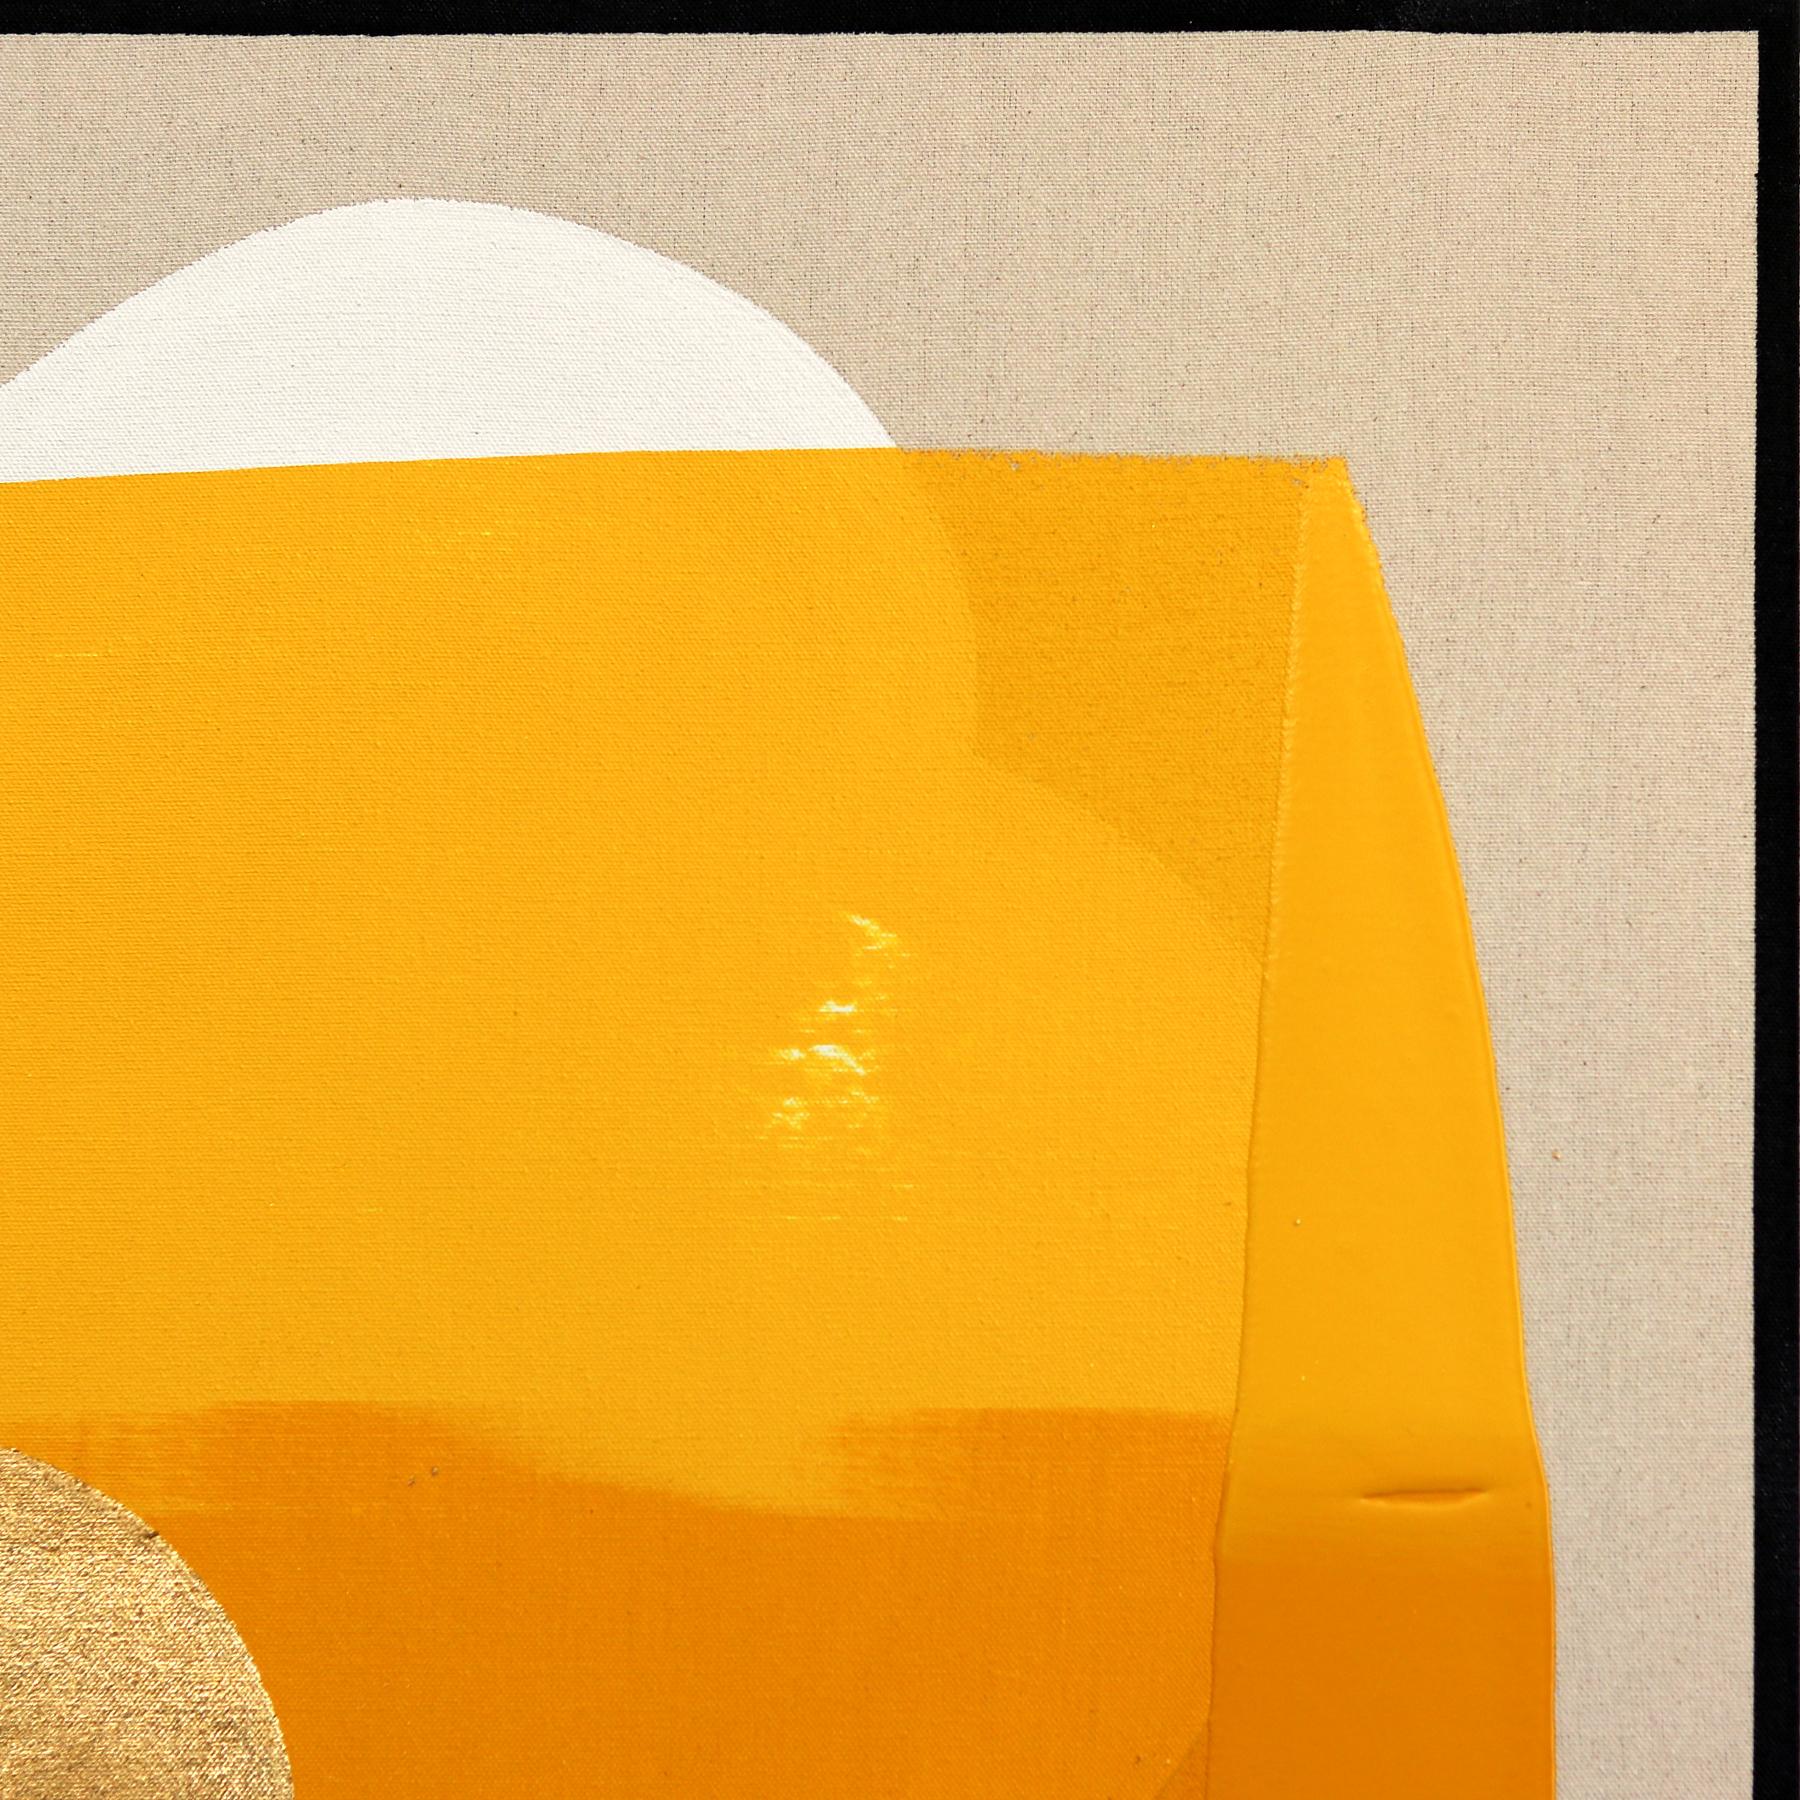 Ewige Sonnenuntergänge: Enthusiasmus - Meditatives abstraktes Gemälde in Gelb und Gold  – Painting von Jason DeMeo